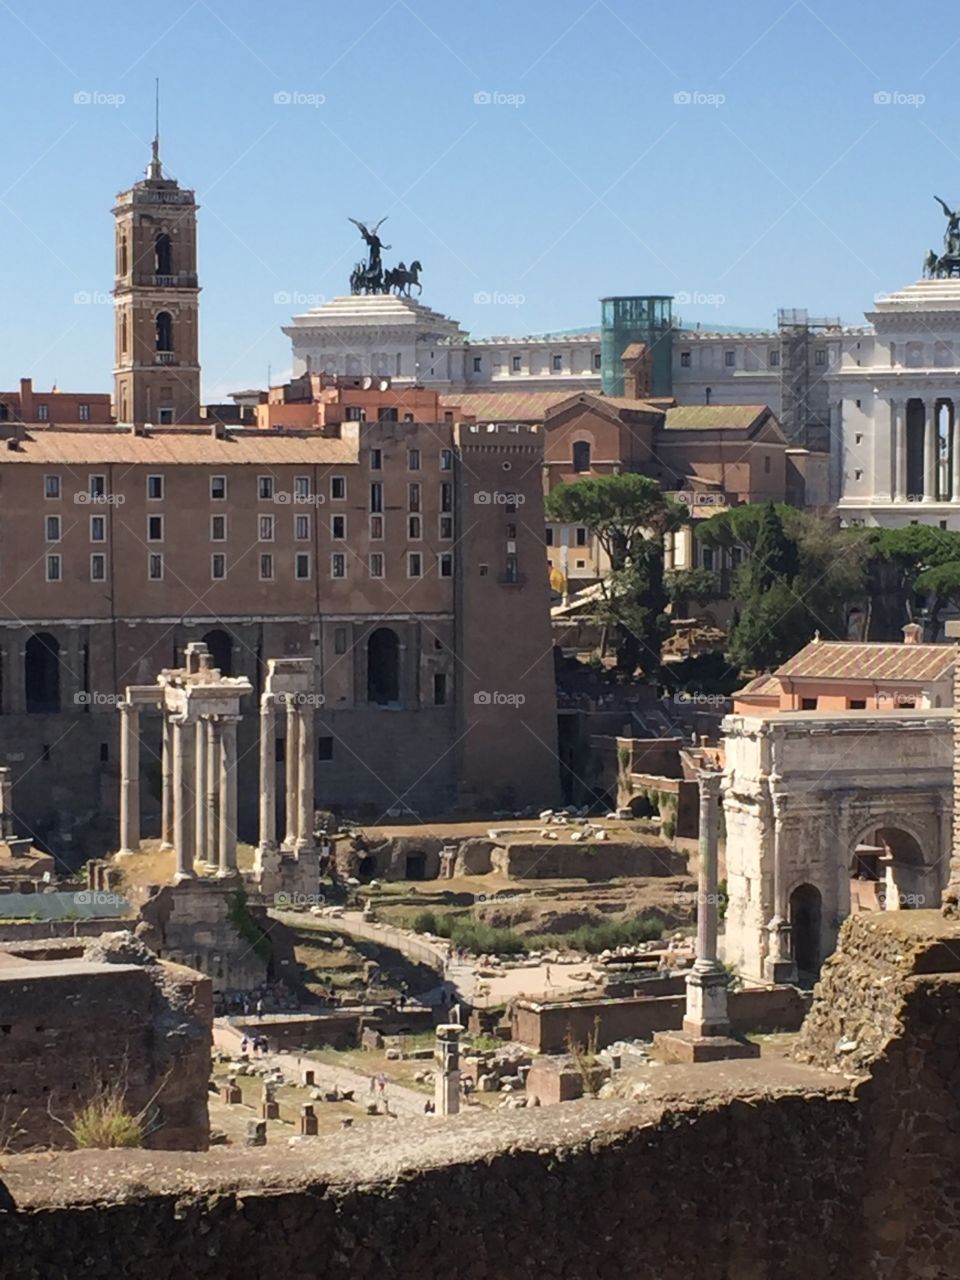 The Roman Forum - Rome, Italy